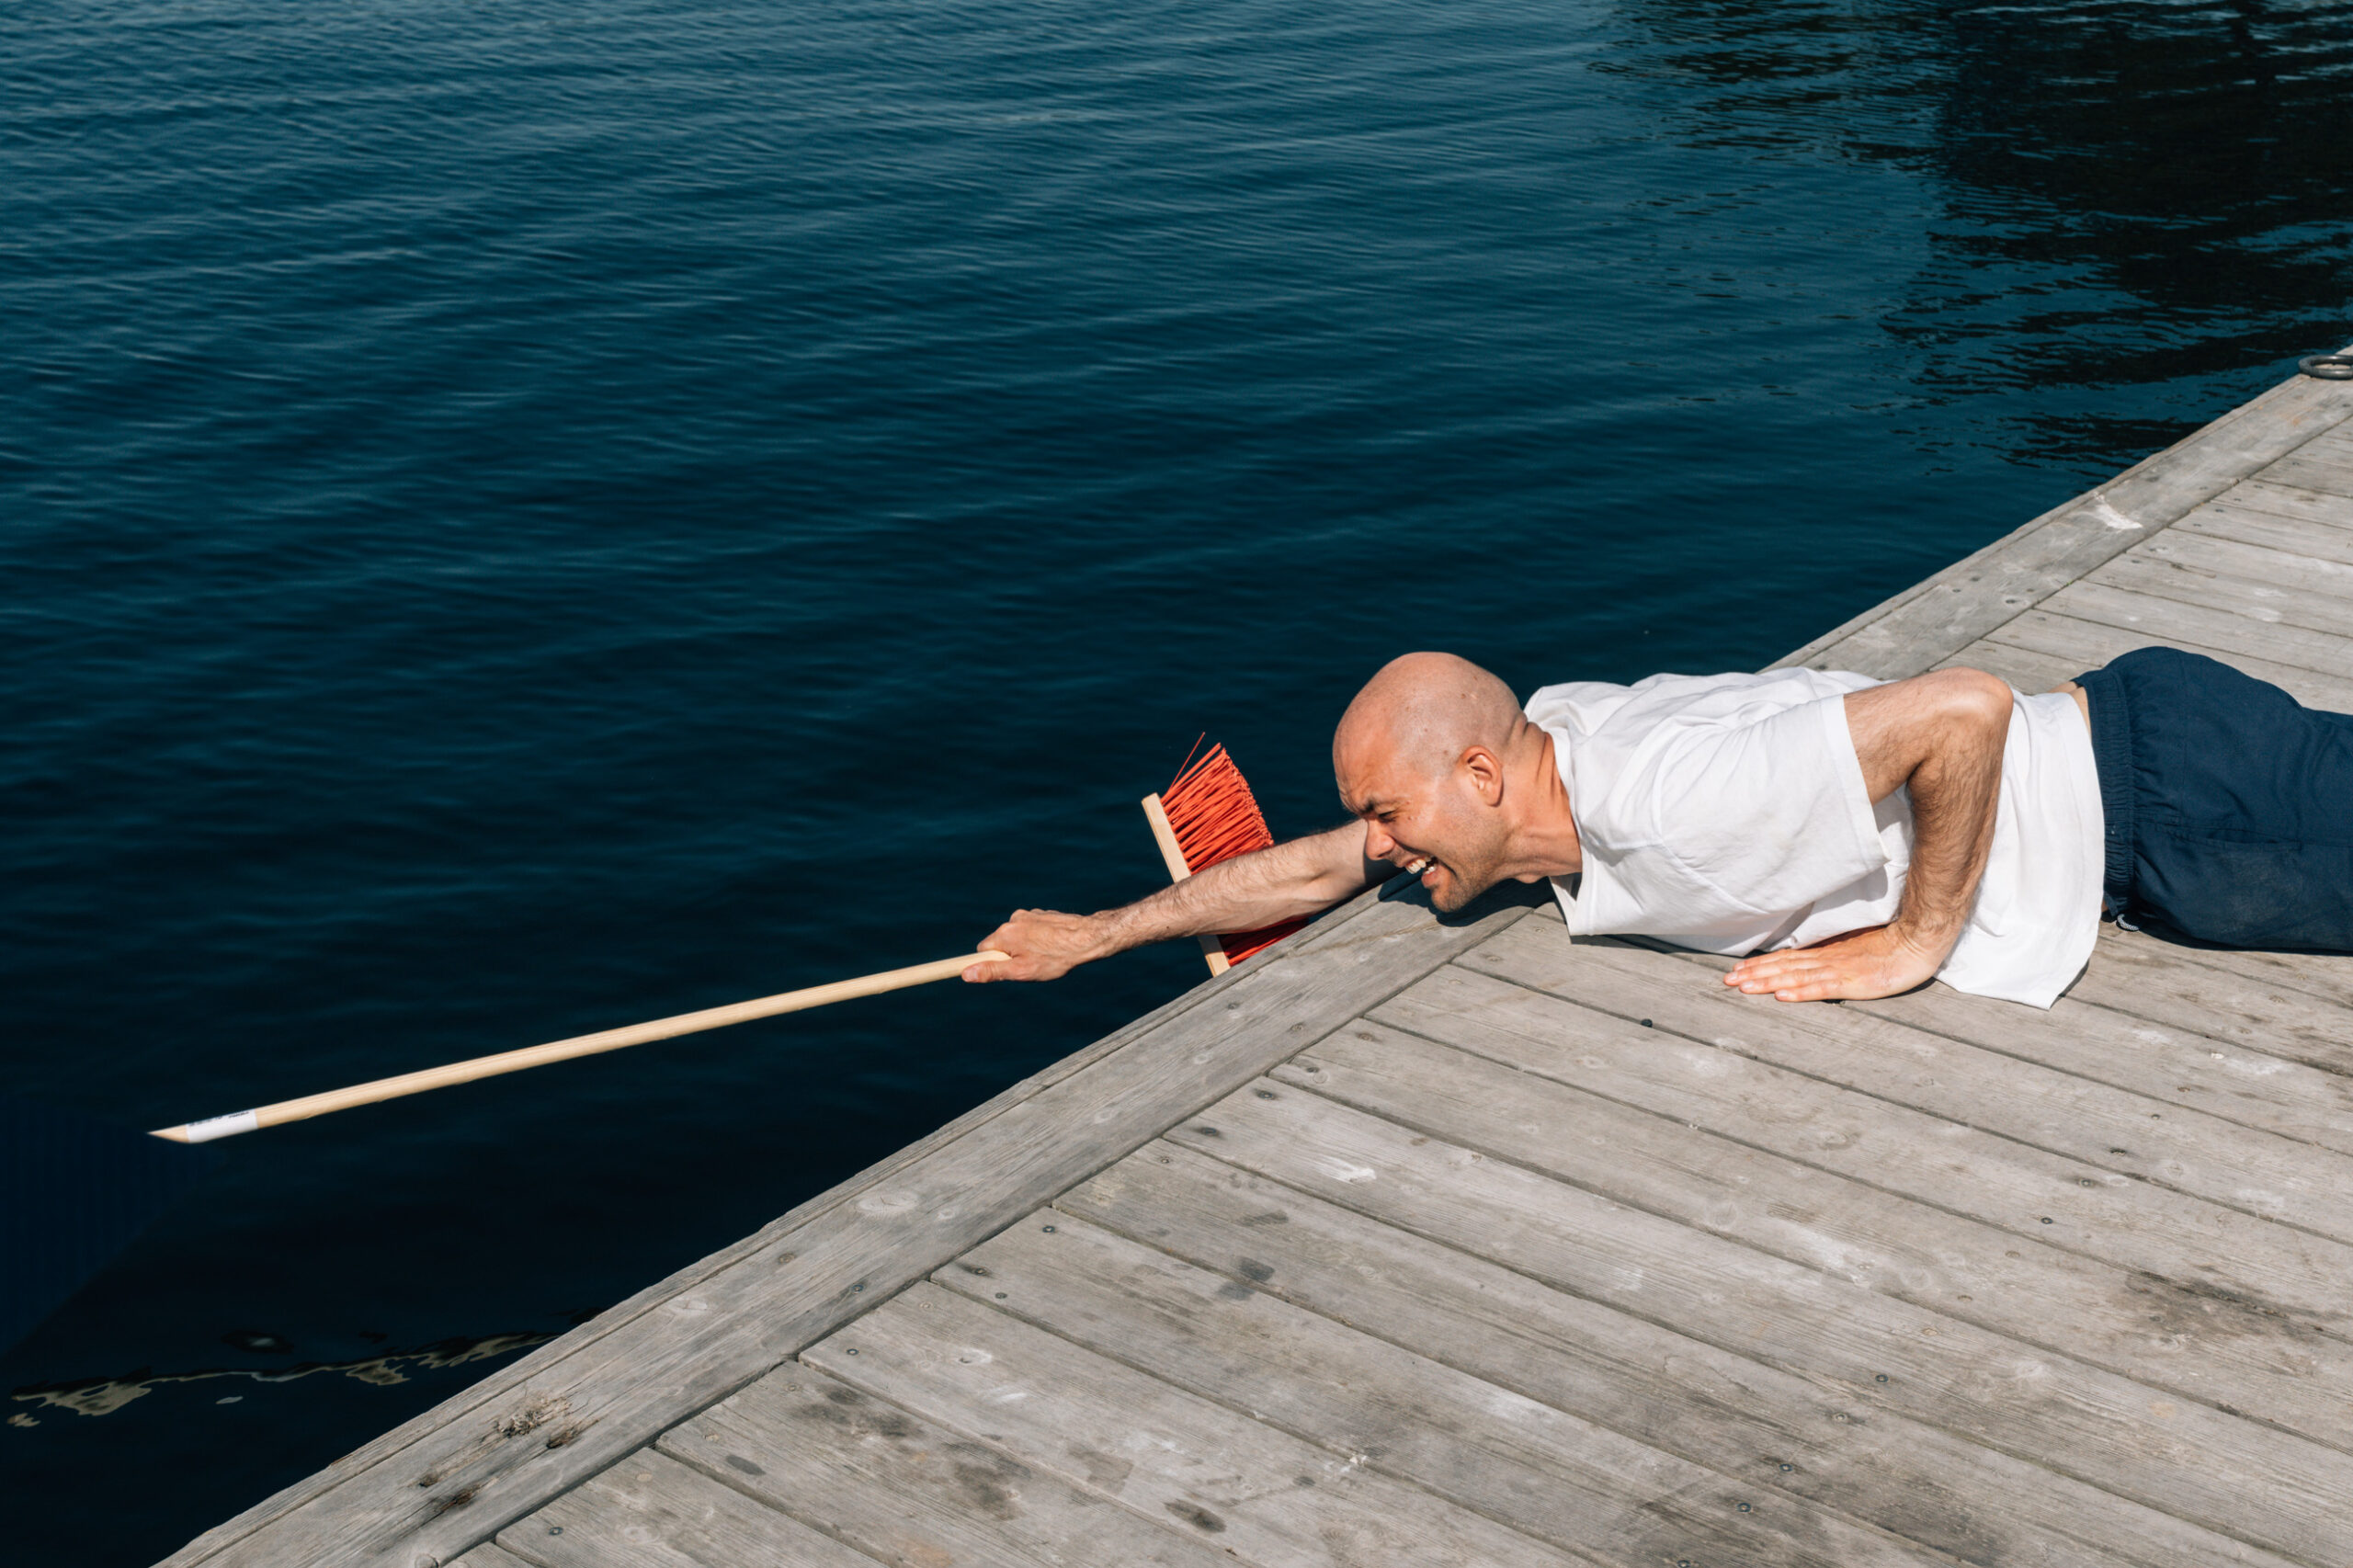 Lars Berrum rekker en kost ut i vannet til en person som er i ferd med å drukne. Bilde tatt i forbindelse med filming av opplysningsfilm om drukning.